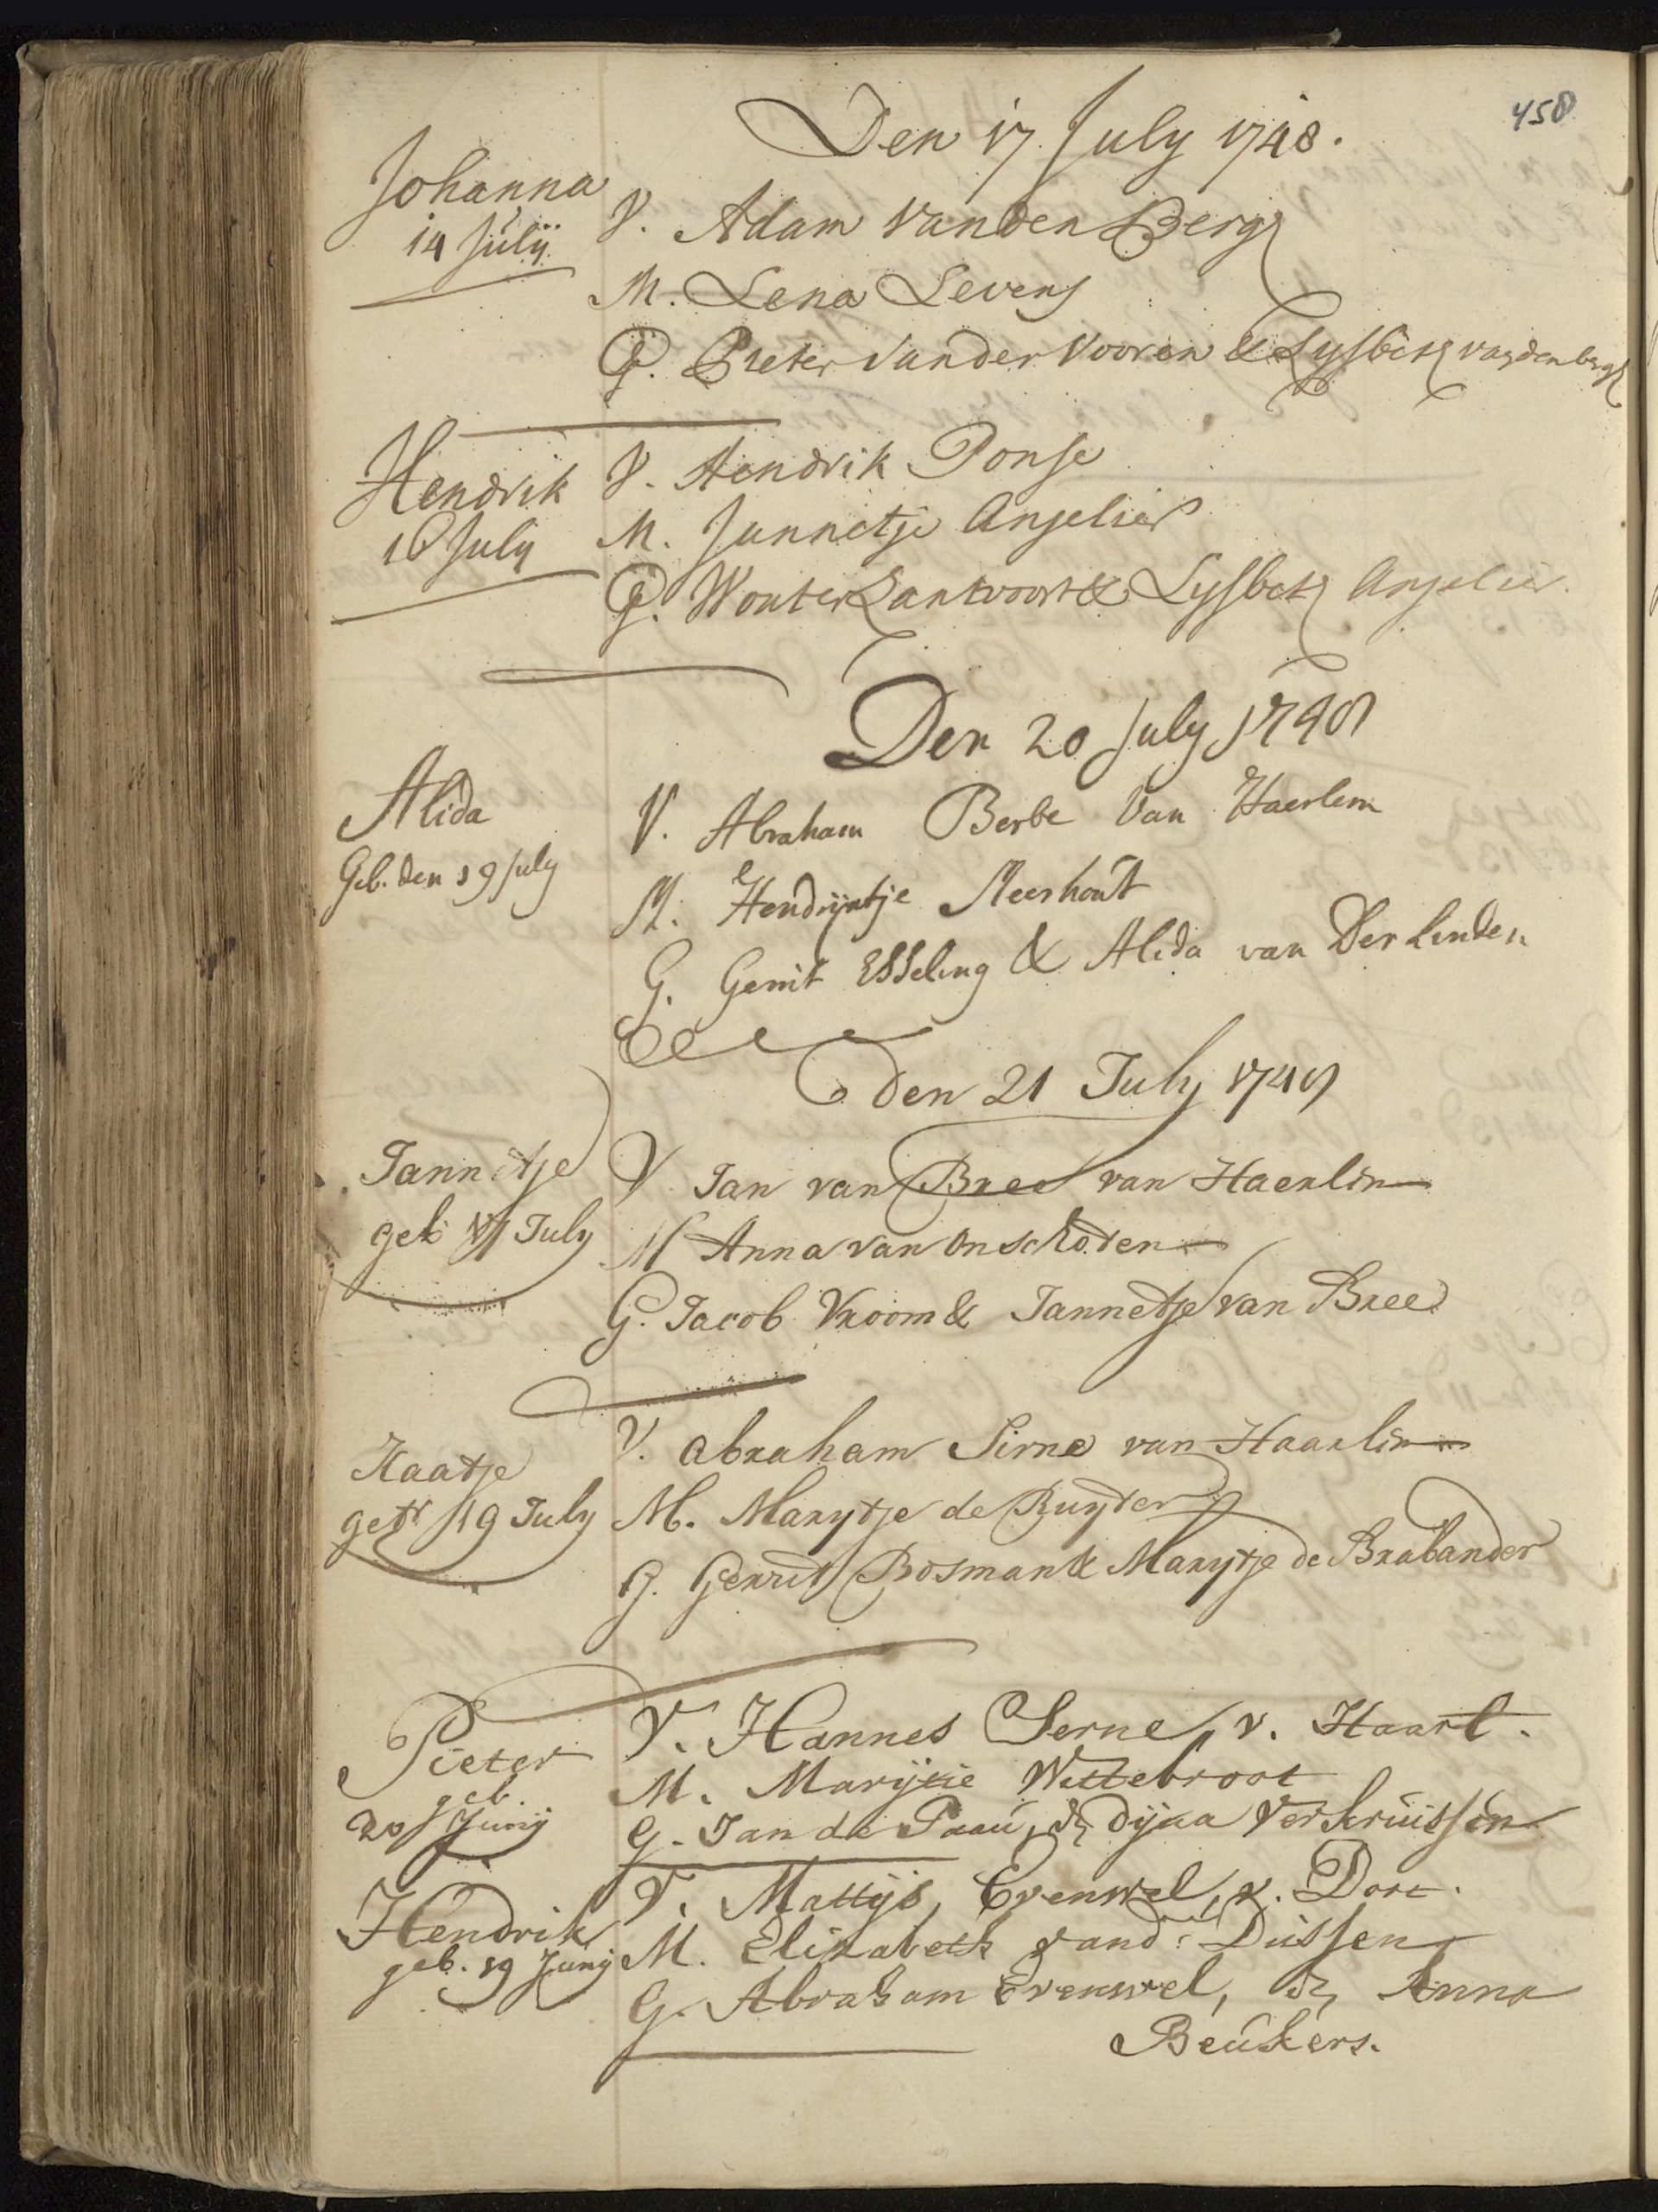 Bron: Noord-Hollands Archief, DTB Haarlem, Dopen 21-07-1748 (Nederduits Gereformeerd)